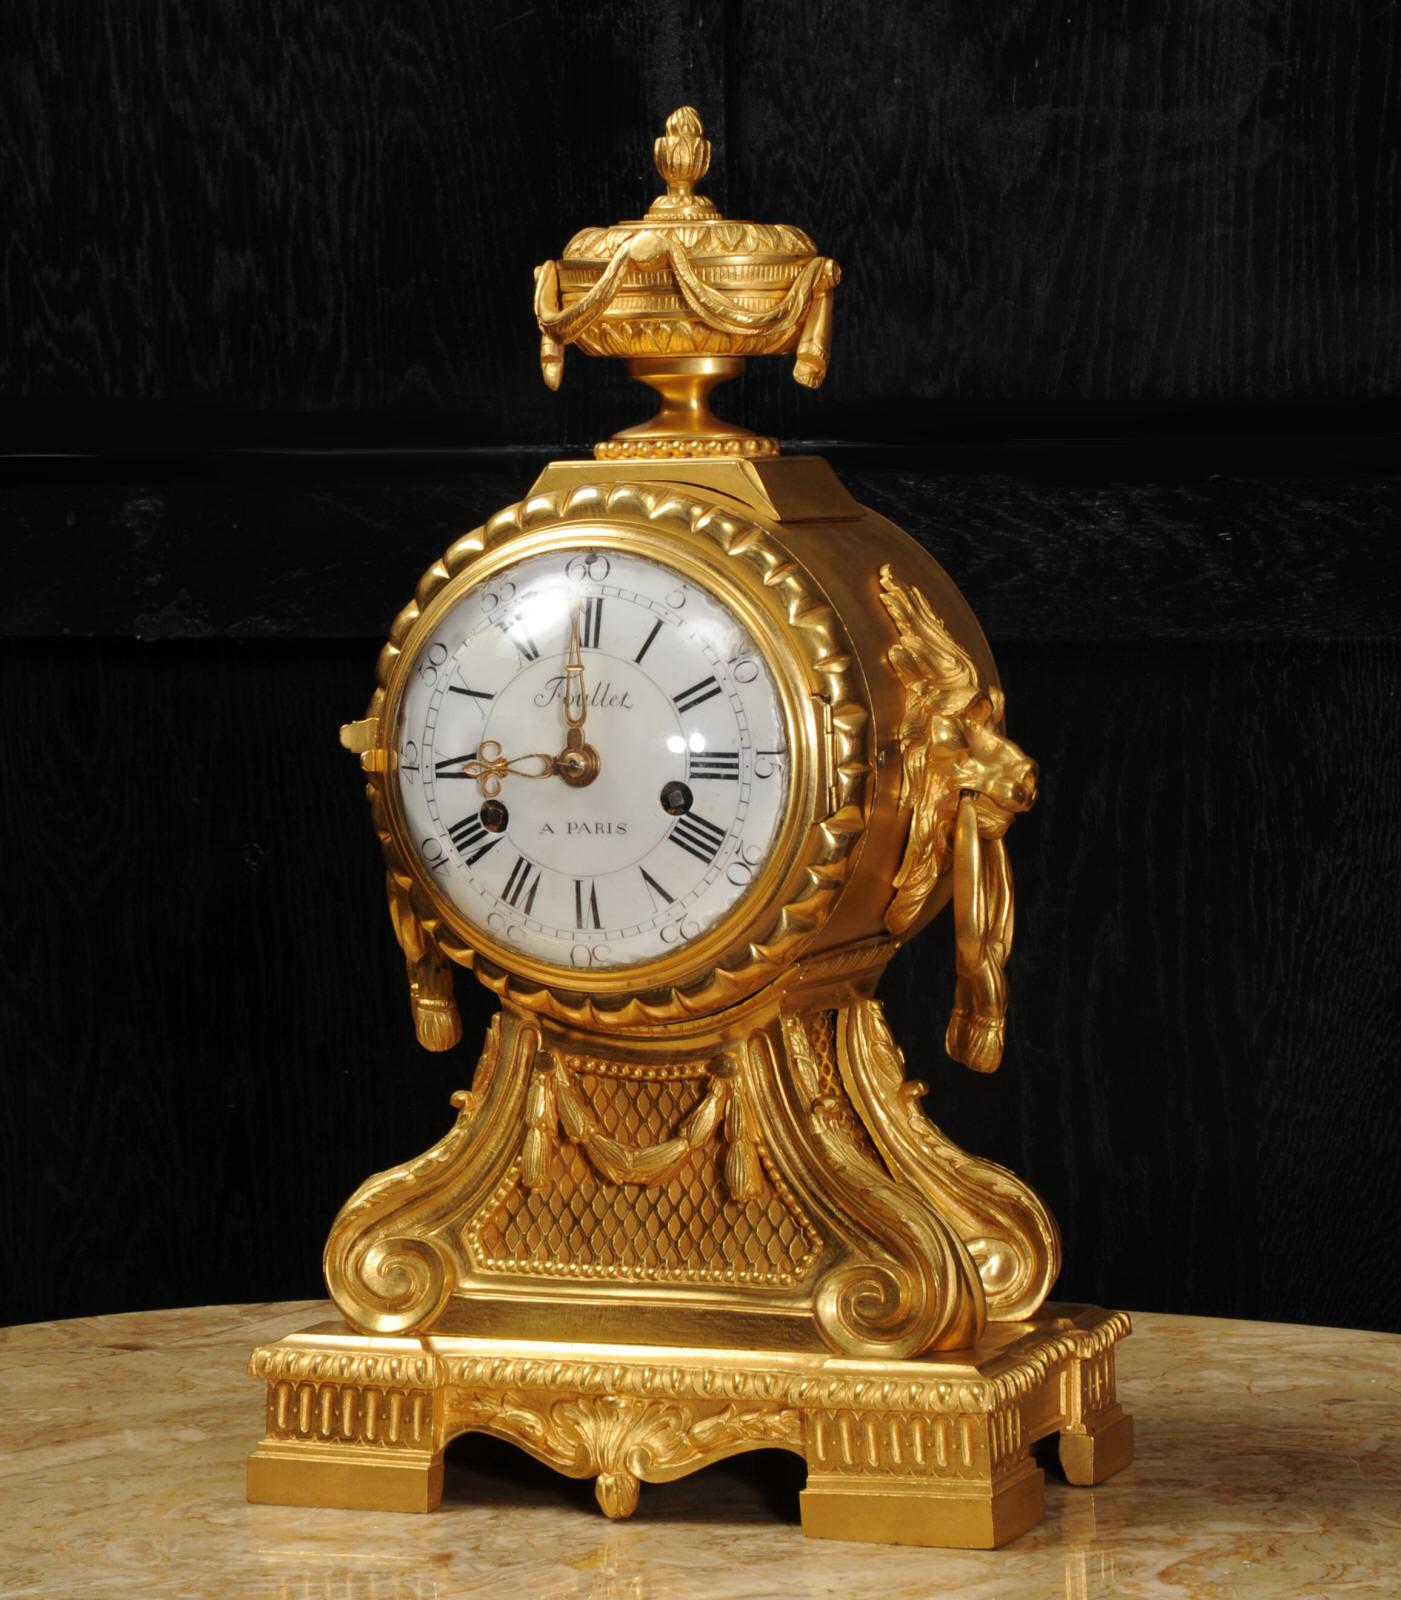 Une rare et très belle horloge française ancienne d'époque Louis XVI, vers 1770, dont le boîtier est signé du prestigieux fabricant Antoine Foullet. Magnifiquement fabriqué en bronze doré au feu de mercure et avec son échappement à verge d'origine.